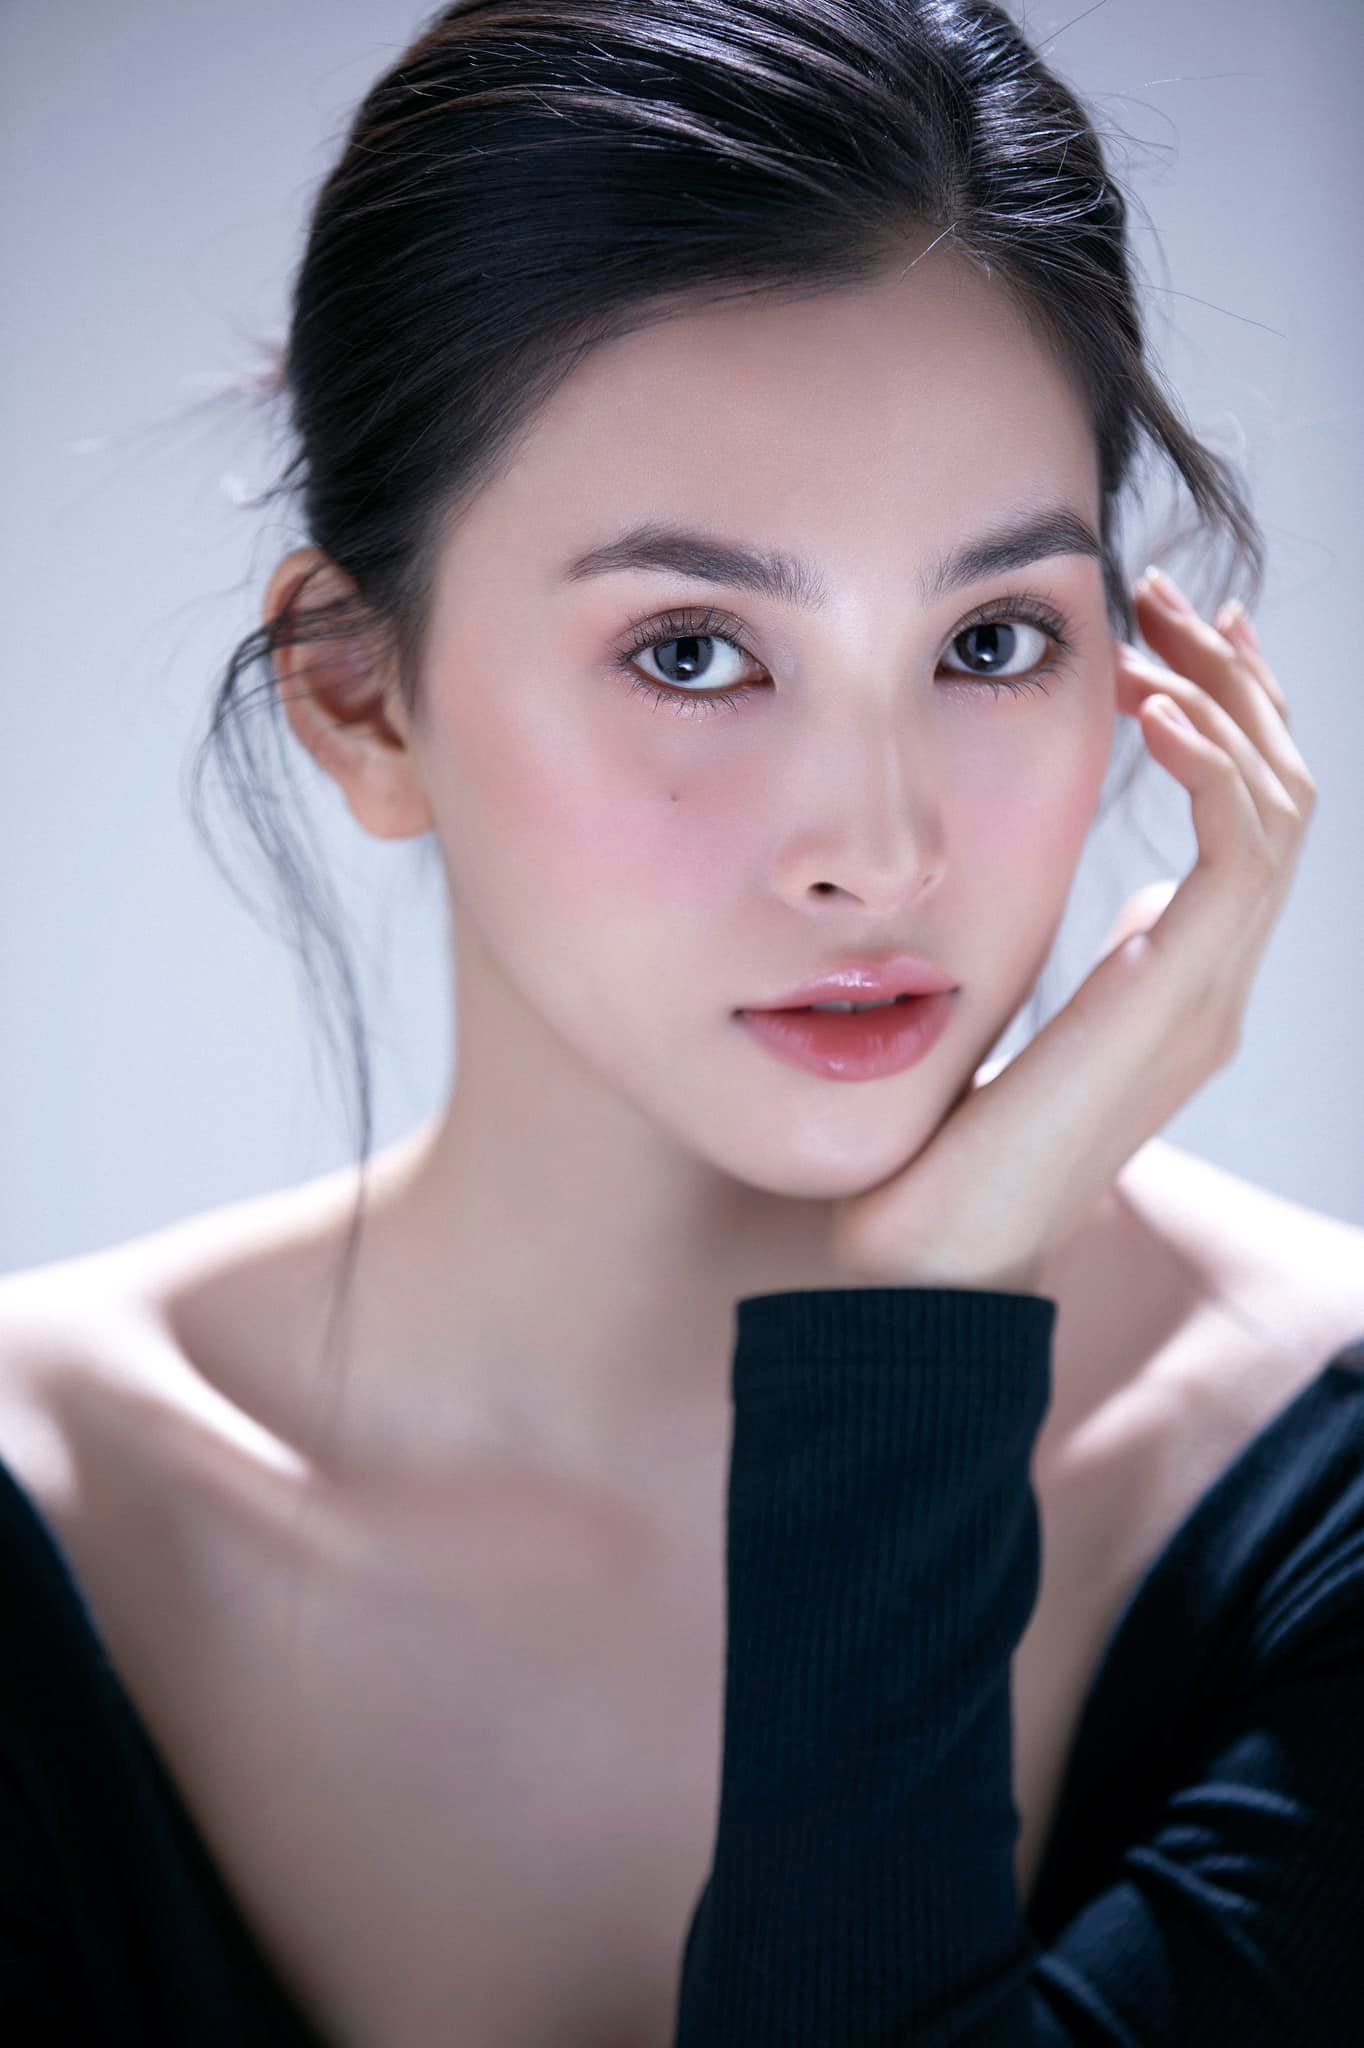 Hoa hậu Tiểu Vy lần đầu nhận vai chính phim điện ảnh - Ảnh 2.